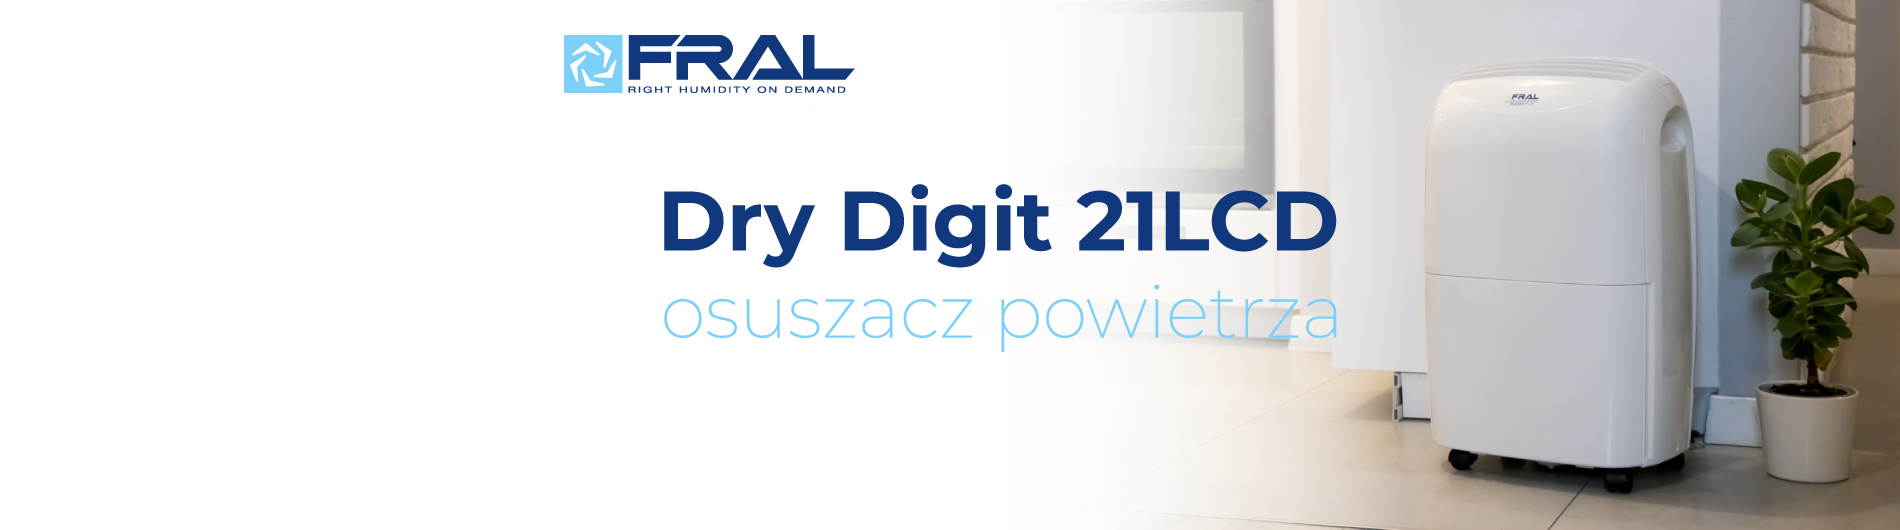 Osuszacz powietrza fral Dry Digit21LCD